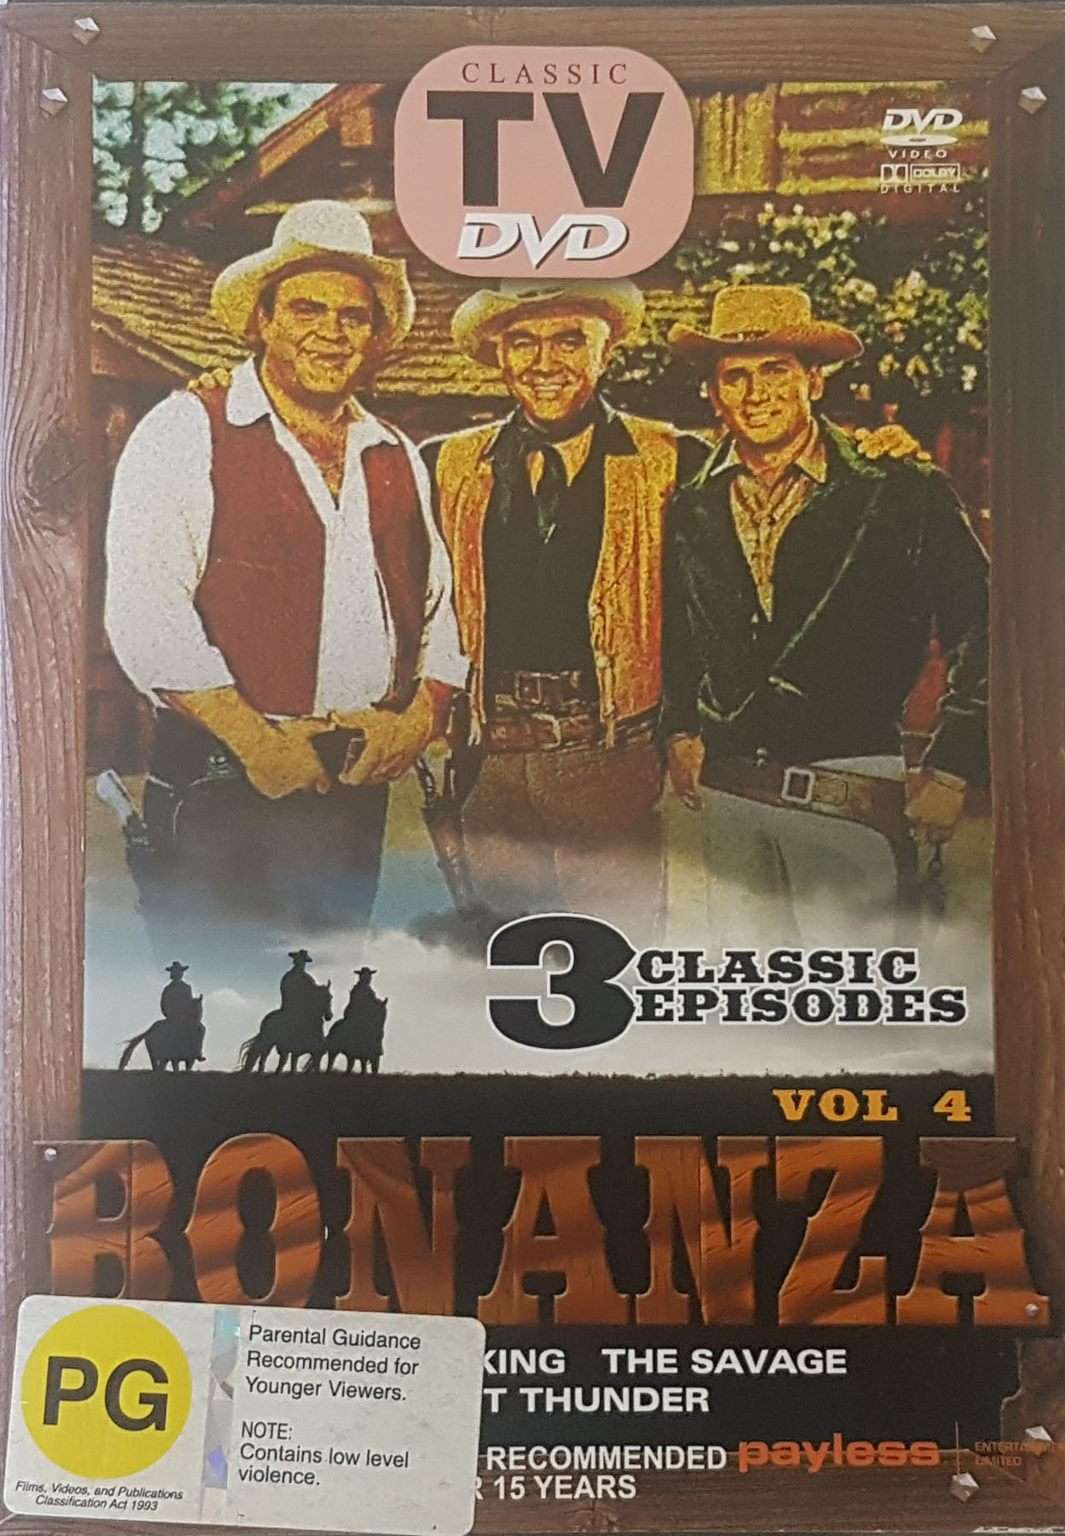 Bonanza Vol. 4 3 Episodes